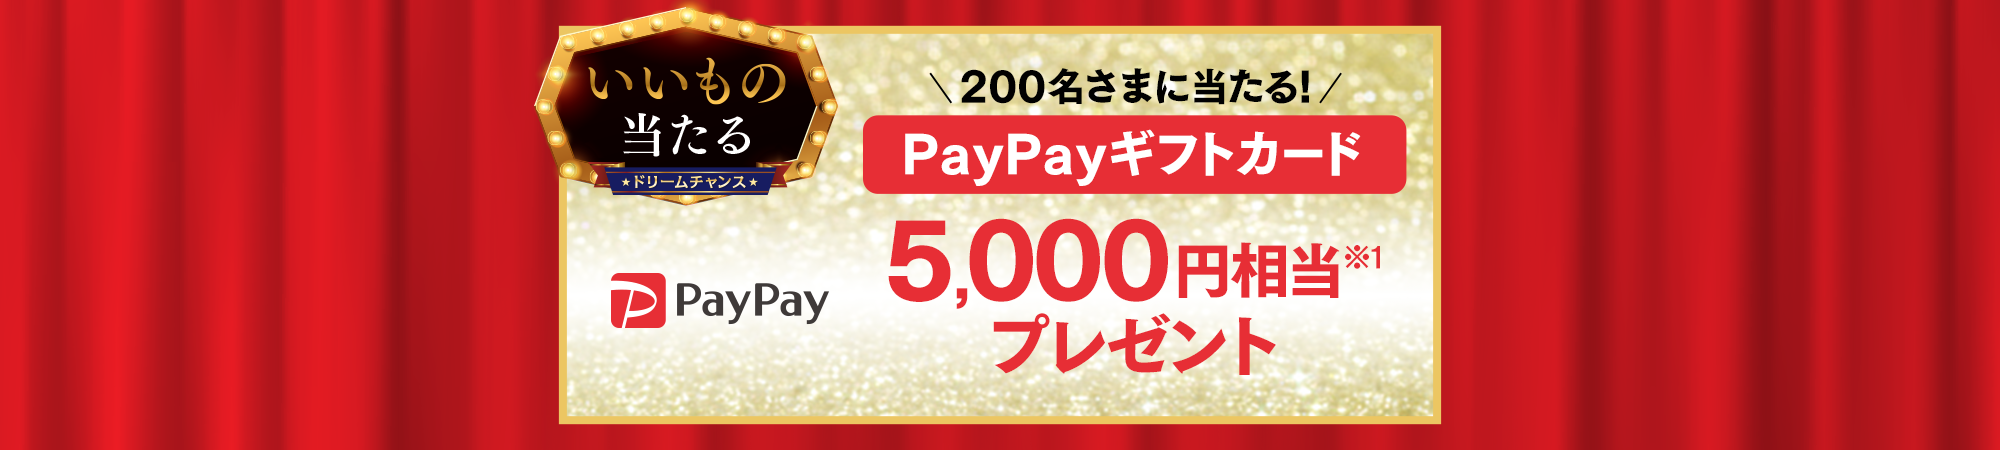 ソフトバンクLINEのドリームチャンスで抽選で1000名に「PayPayギフトカード 500円相当」が当たる。～2/18 10時。